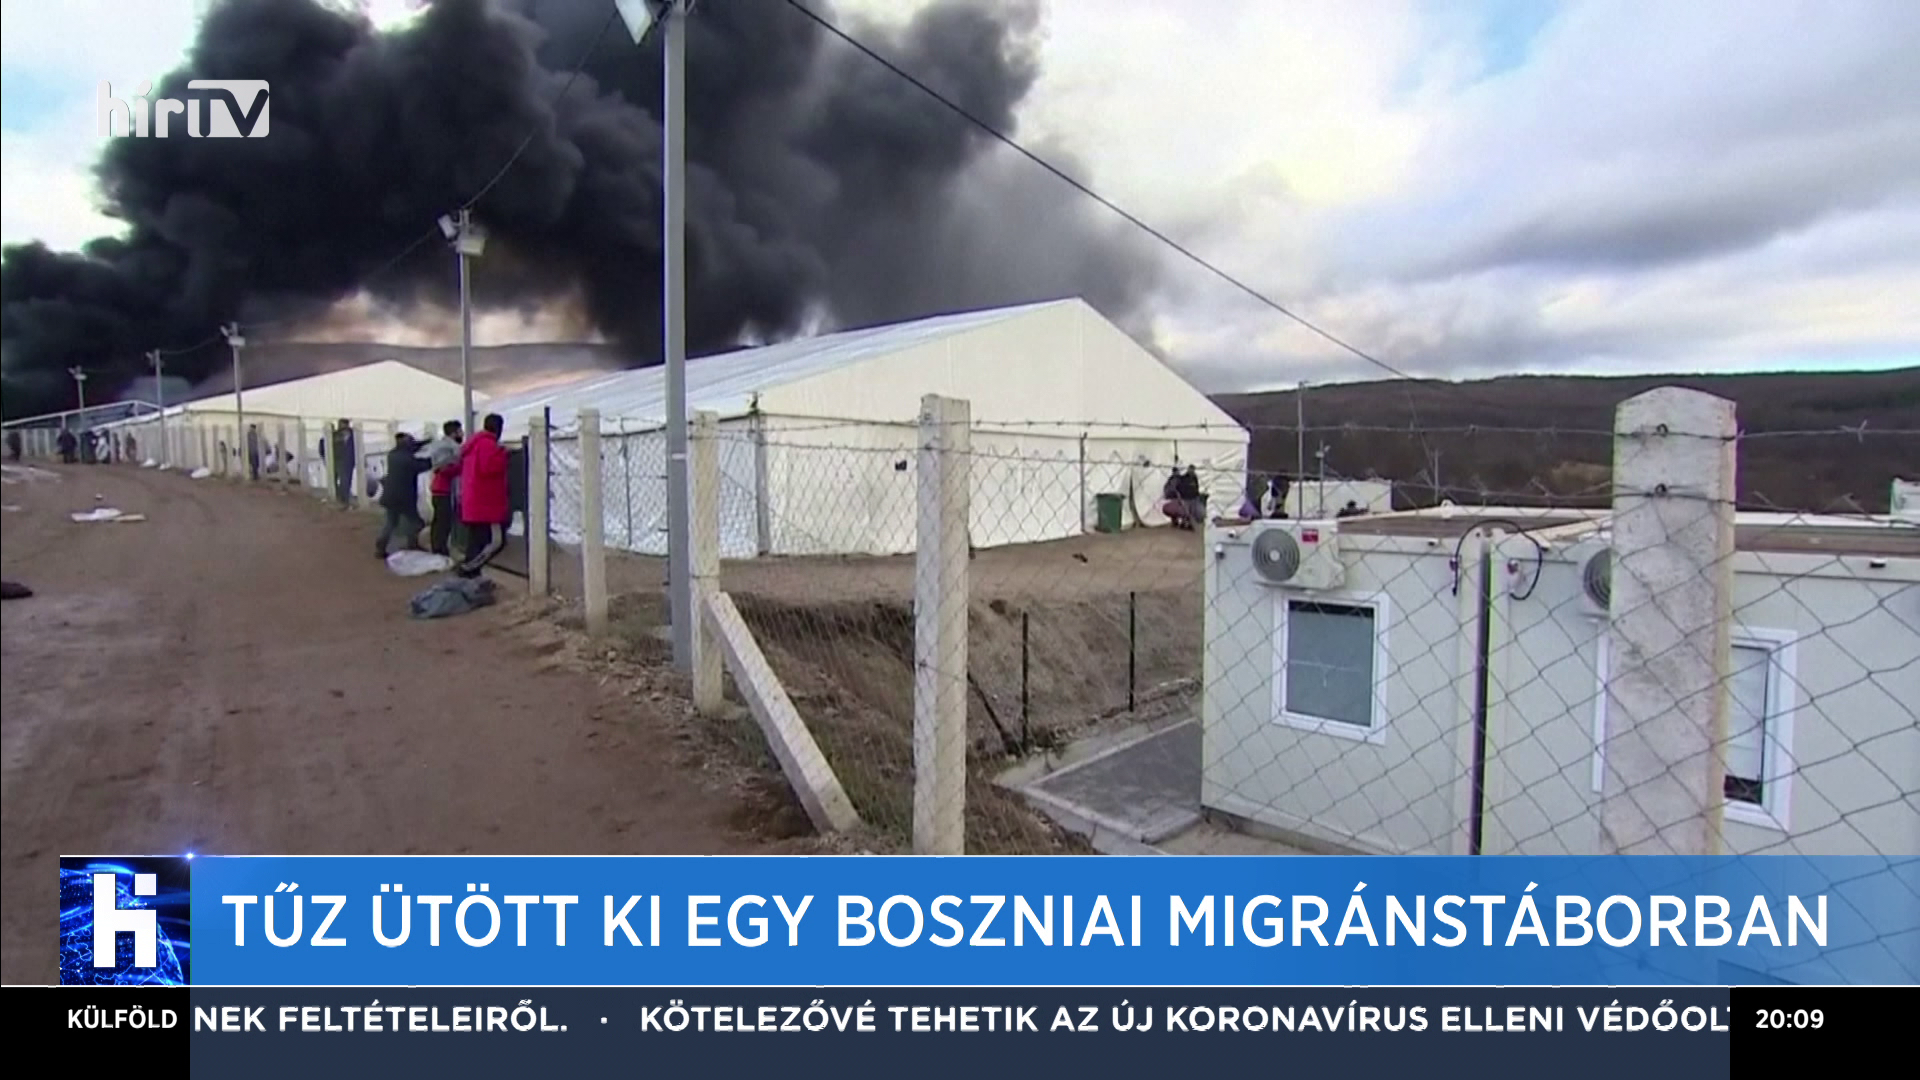 Tűz ütött ki egy boszniai migránstáborban